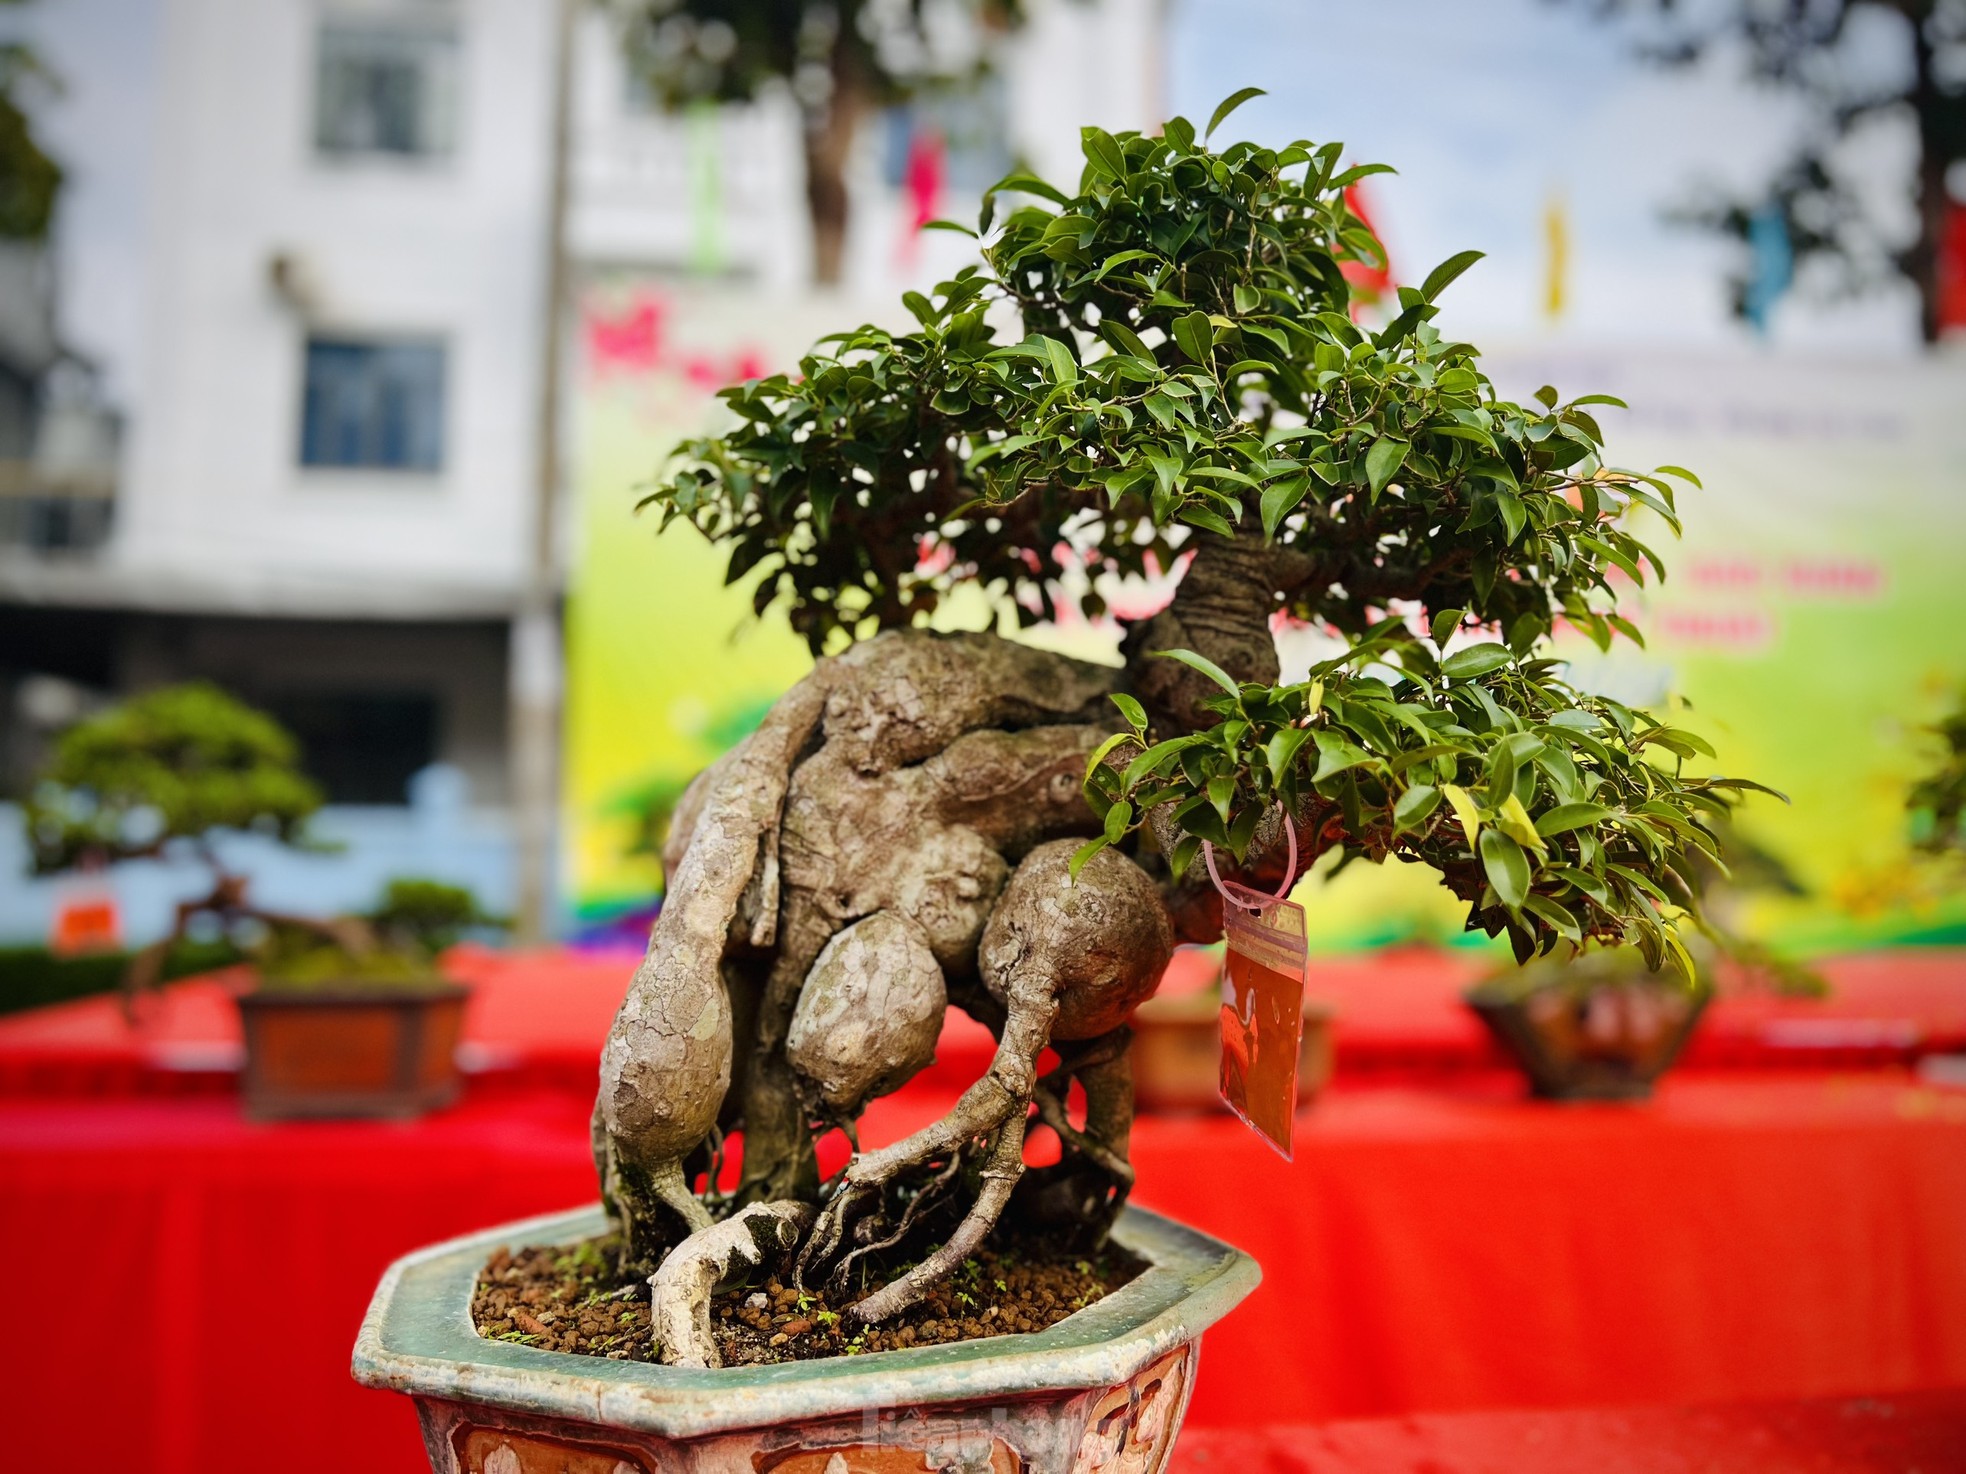 Dàn bonsai độc lạ, giá lên đến 500 triệu đồng ở Quảng Ngãi - Ảnh 14.